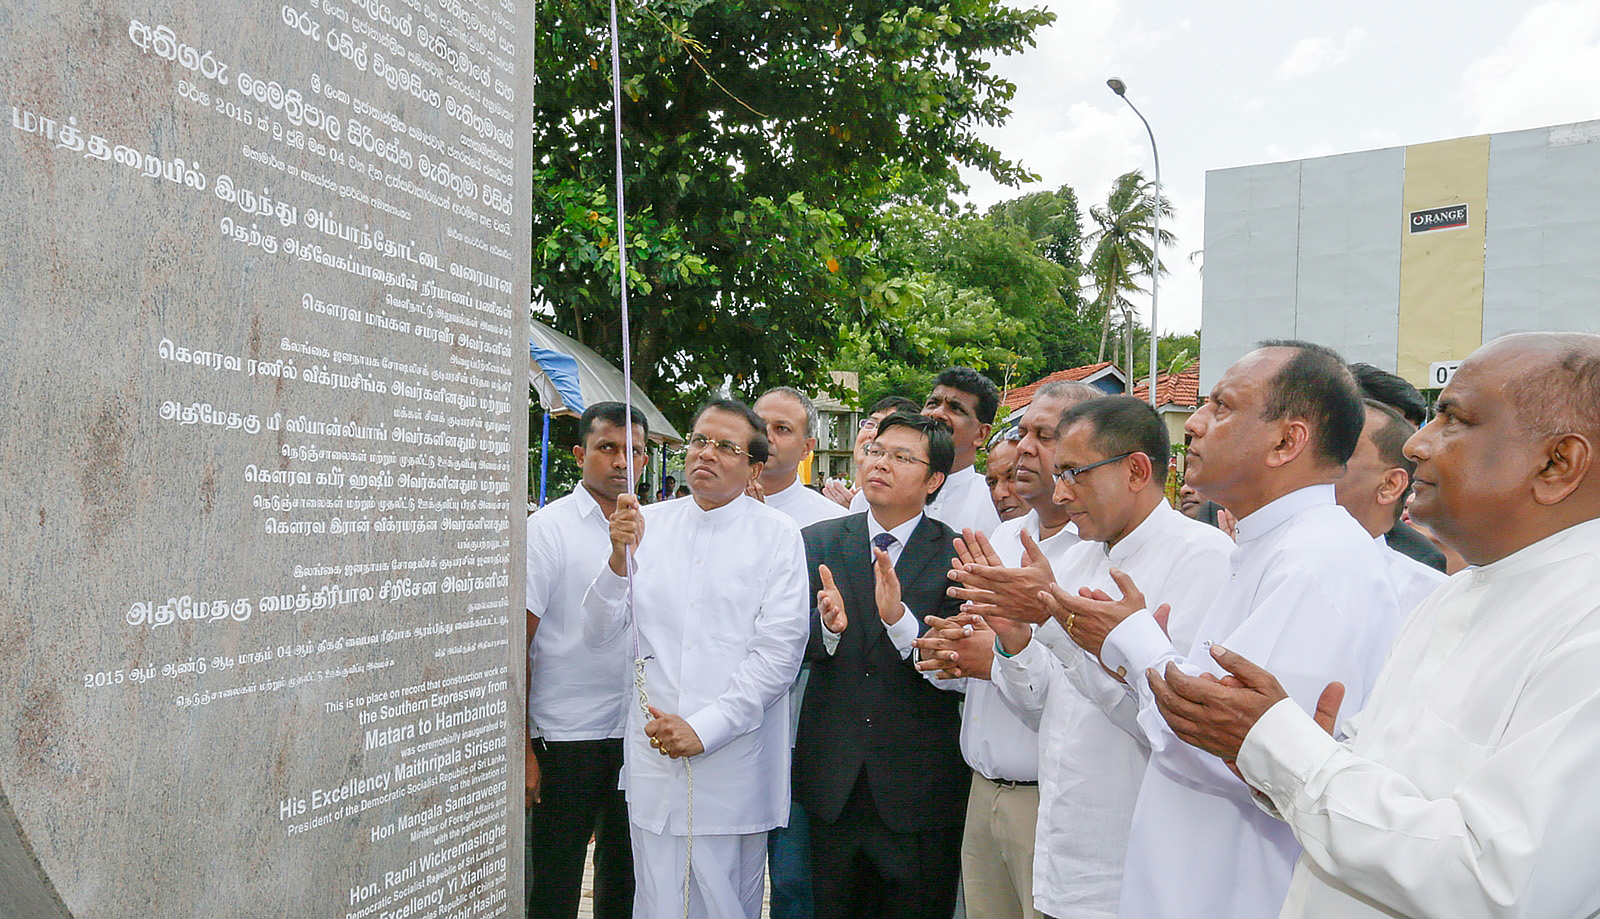 201507 斯里兰卡现任总统Maitrihipala Sirisena出席南部高速公路延长线项目启动仪式._meitu_7.jpg